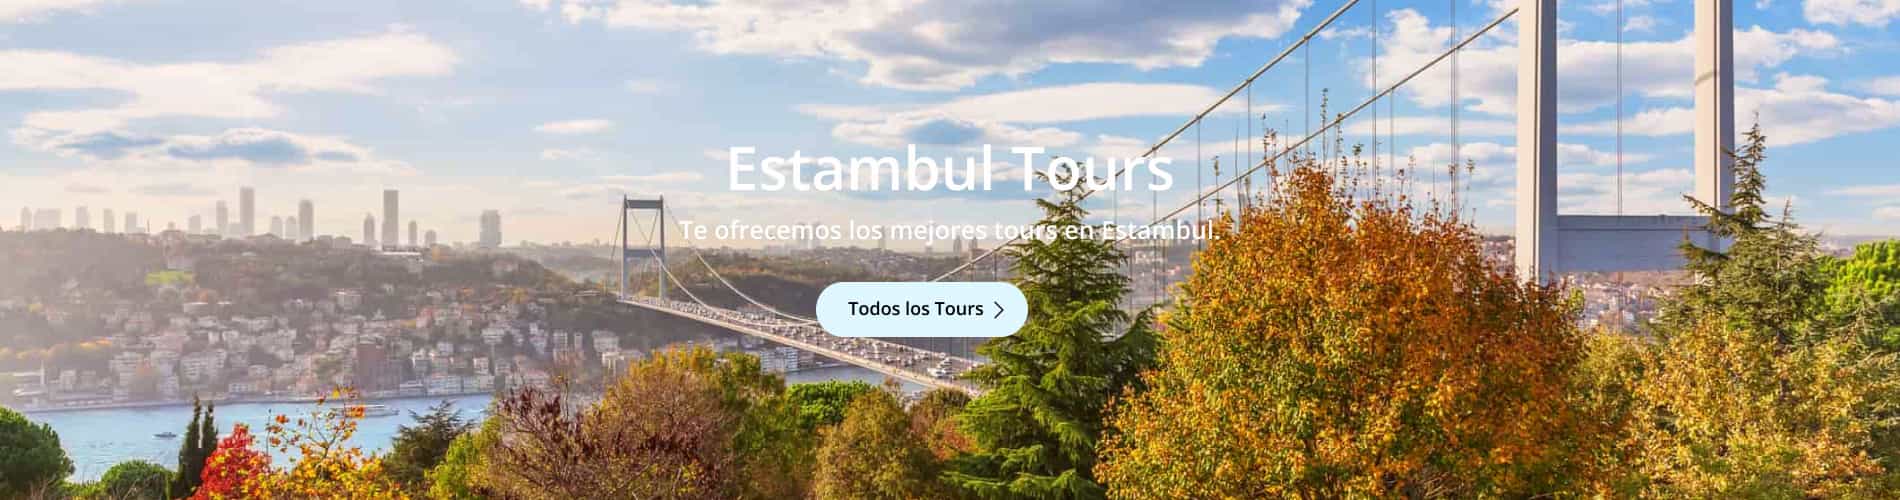 Estambul Tour